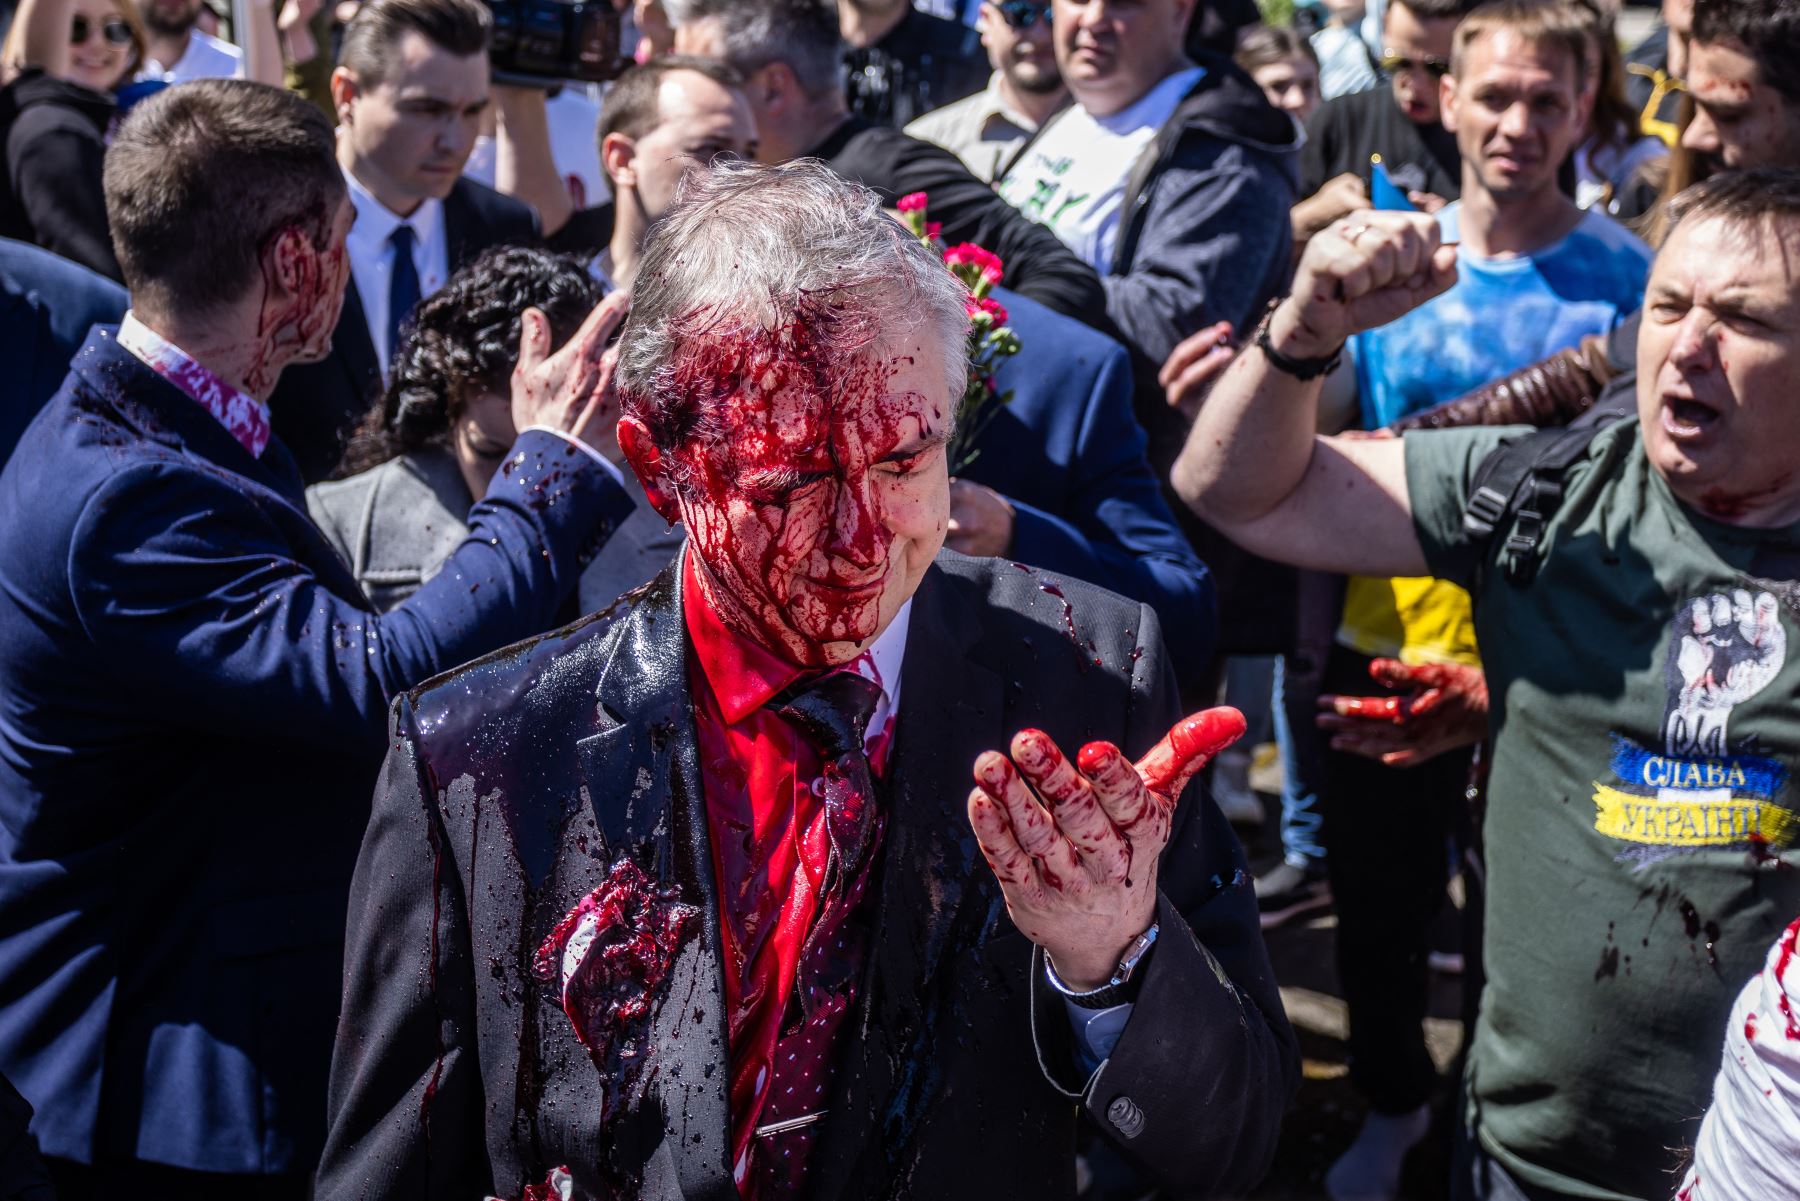 Embajador ruso es agredido en Polonia con pintura roja en plena ceremonia [fotos y video]